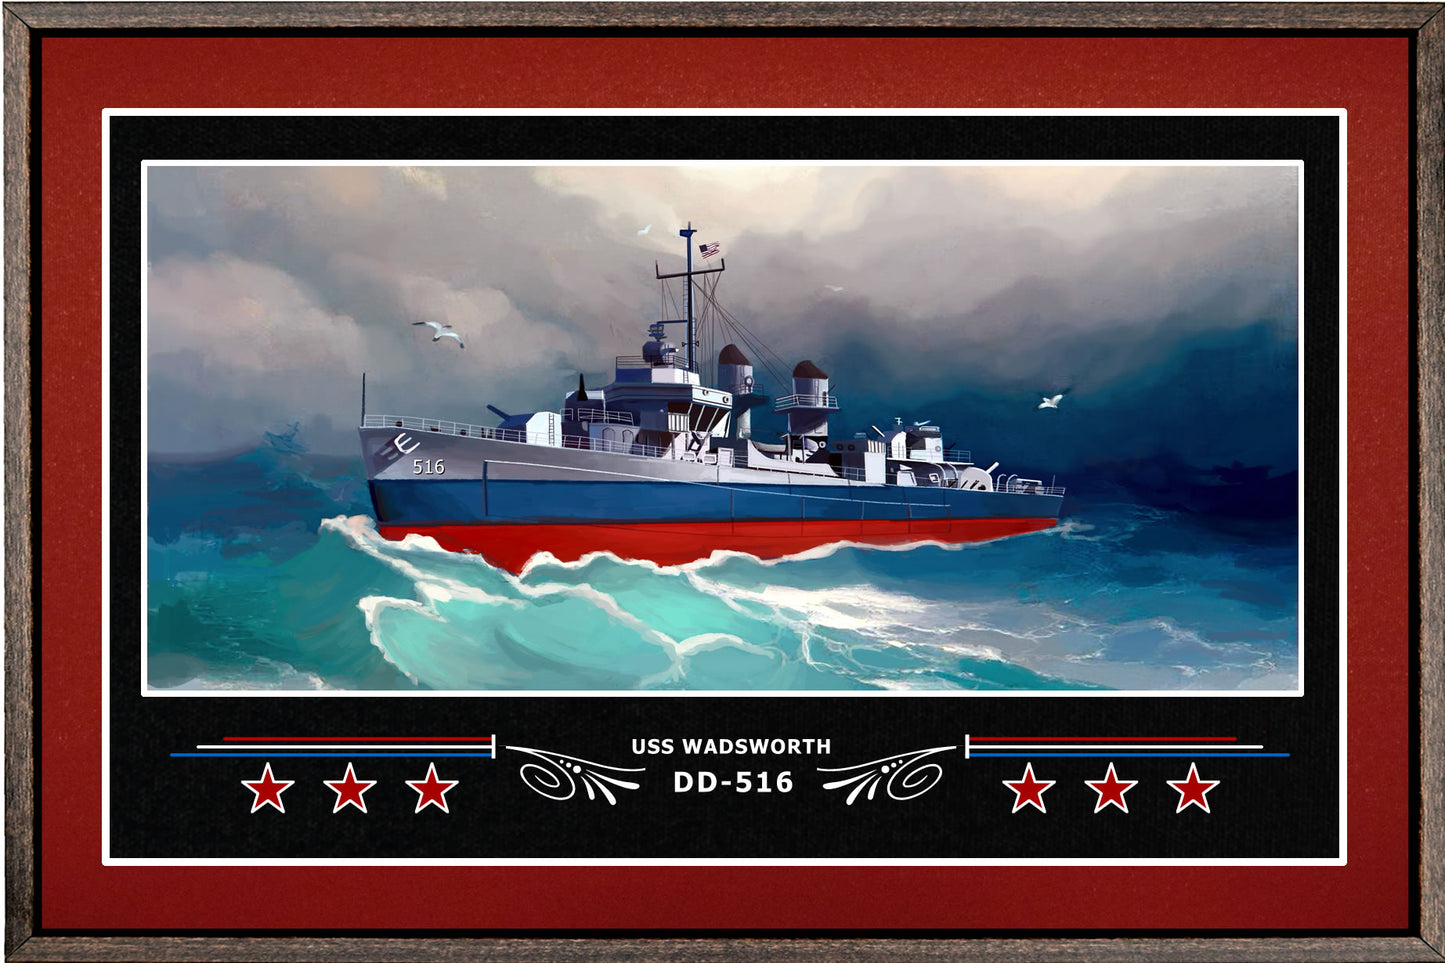 USS WADSWORTH DD 516 BOX FRAMED CANVAS ART BURGUNDY